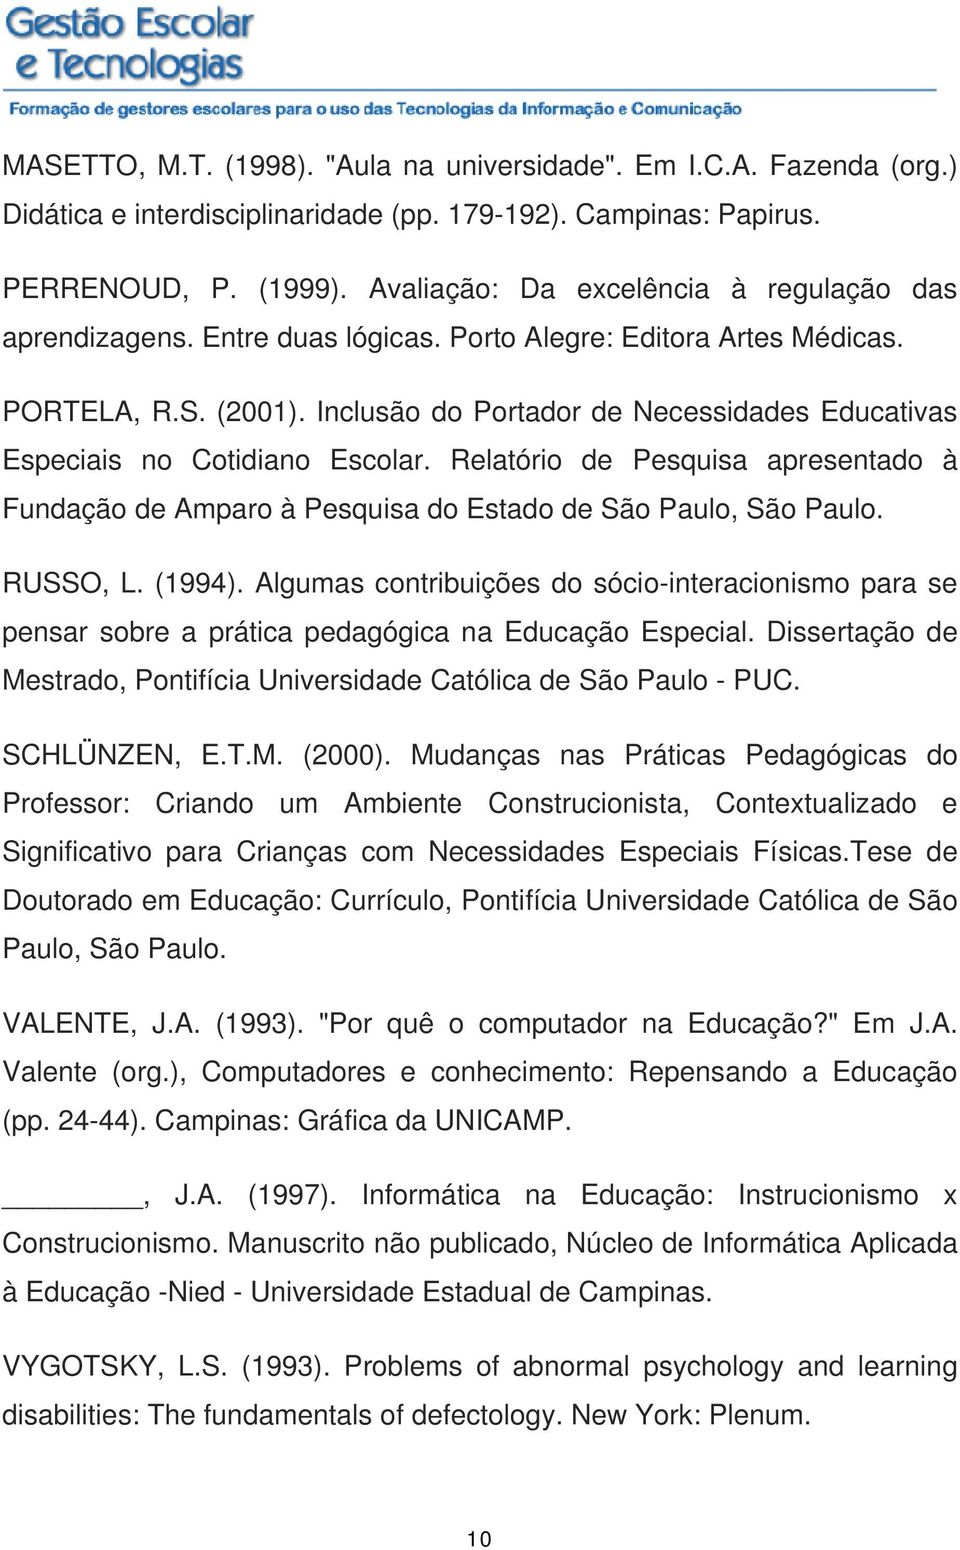 Inclusão do Portador de Necessidades Educativas Especiais no Cotidiano Escolar. Relatório de Pesquisa apresentado à Fundação de Amparo à Pesquisa do Estado de São Paulo, São Paulo. RUSSO, L. (1994).